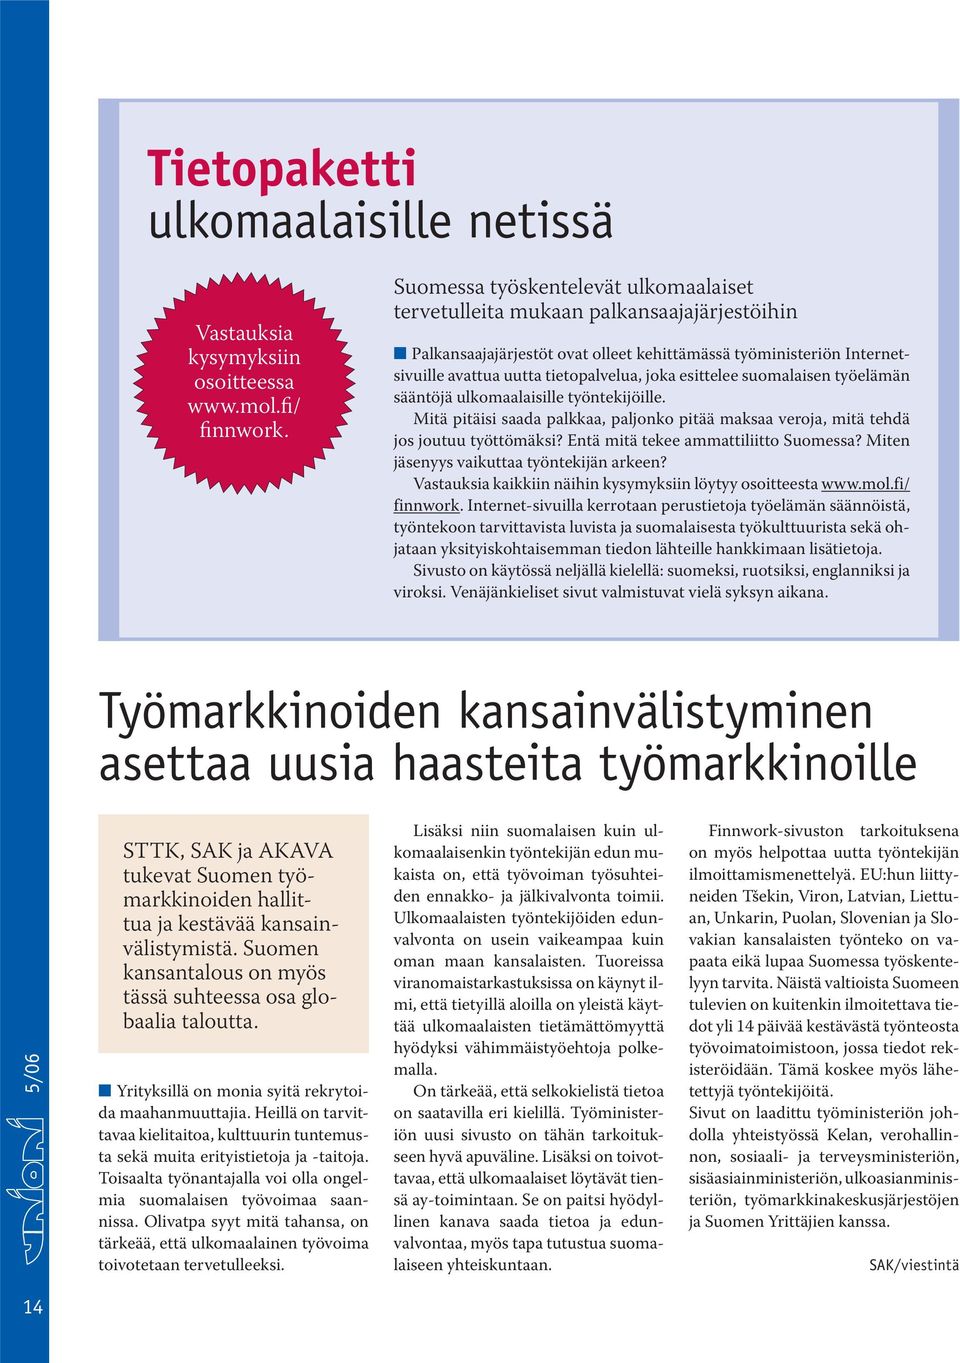 esittelee suomalaisen työelämän sääntöjä ulkomaalaisille työntekijöille. Mitä pitäisi saada palkkaa, paljonko pitää maksaa veroja, mitä tehdä jos joutuu työttömäksi?